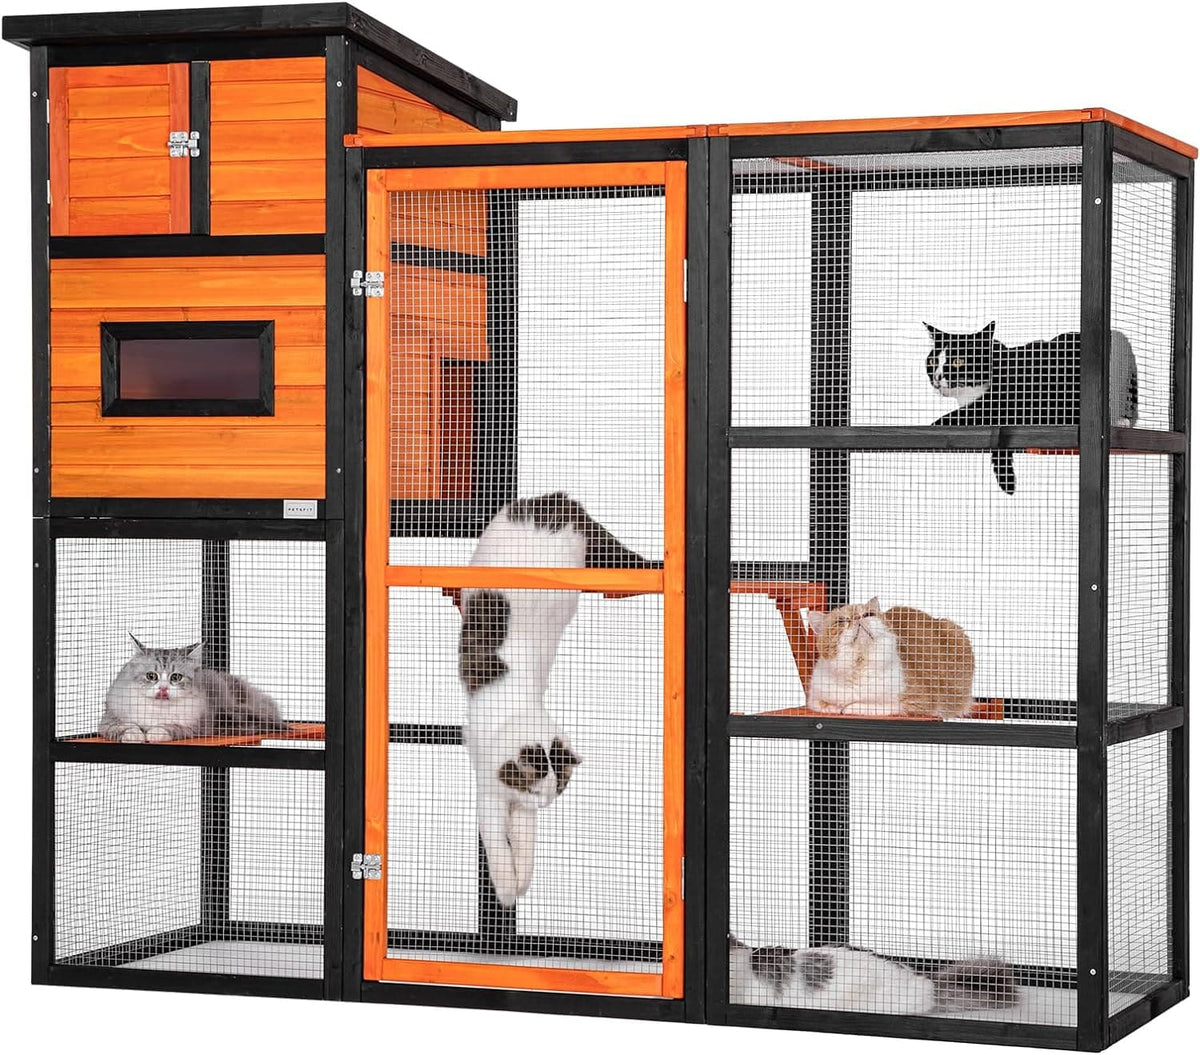 Petsfit Outdoor Catio 4 essais, 2 salles de repos, 4 plateformes et toit étanche, enclos extérieur pour chat Catio